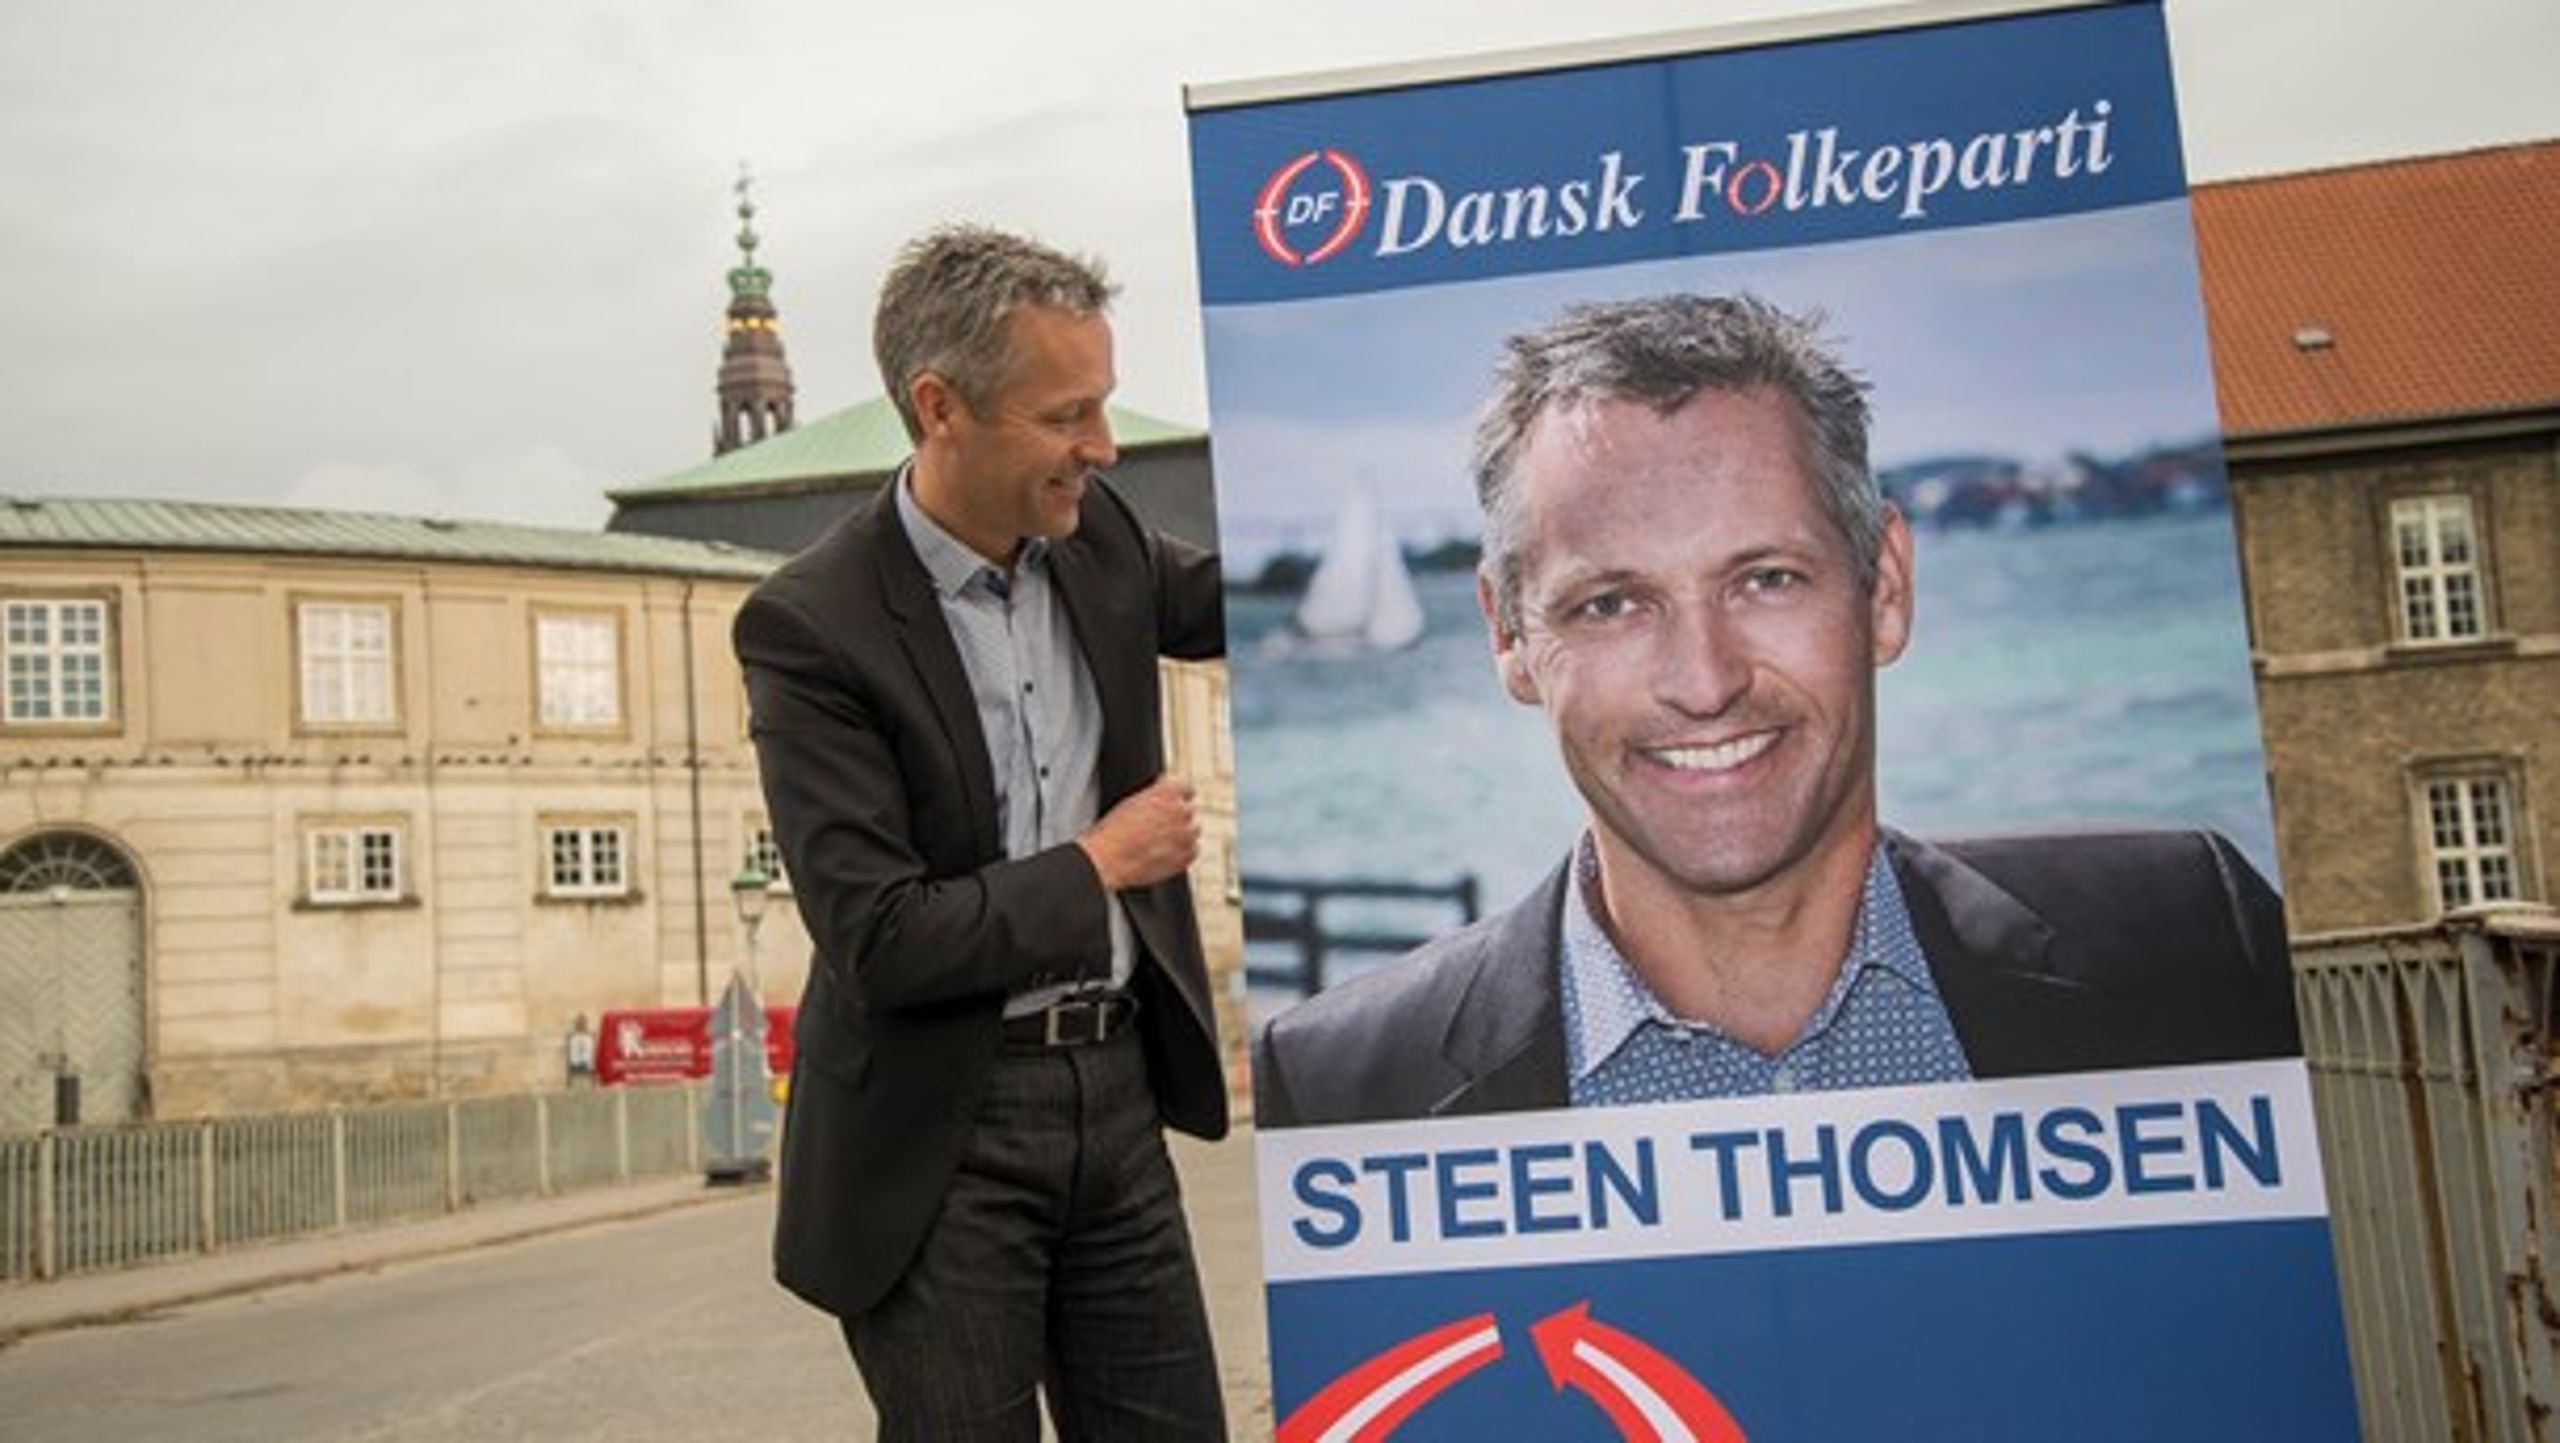 Folketingskandidat Steen Thomsen (DF) går både ind for markant højere priser på cigaretter og for, at cigaretter skal gemmes væk under disken, fortalte han ved et vælgermøde i denne uge.